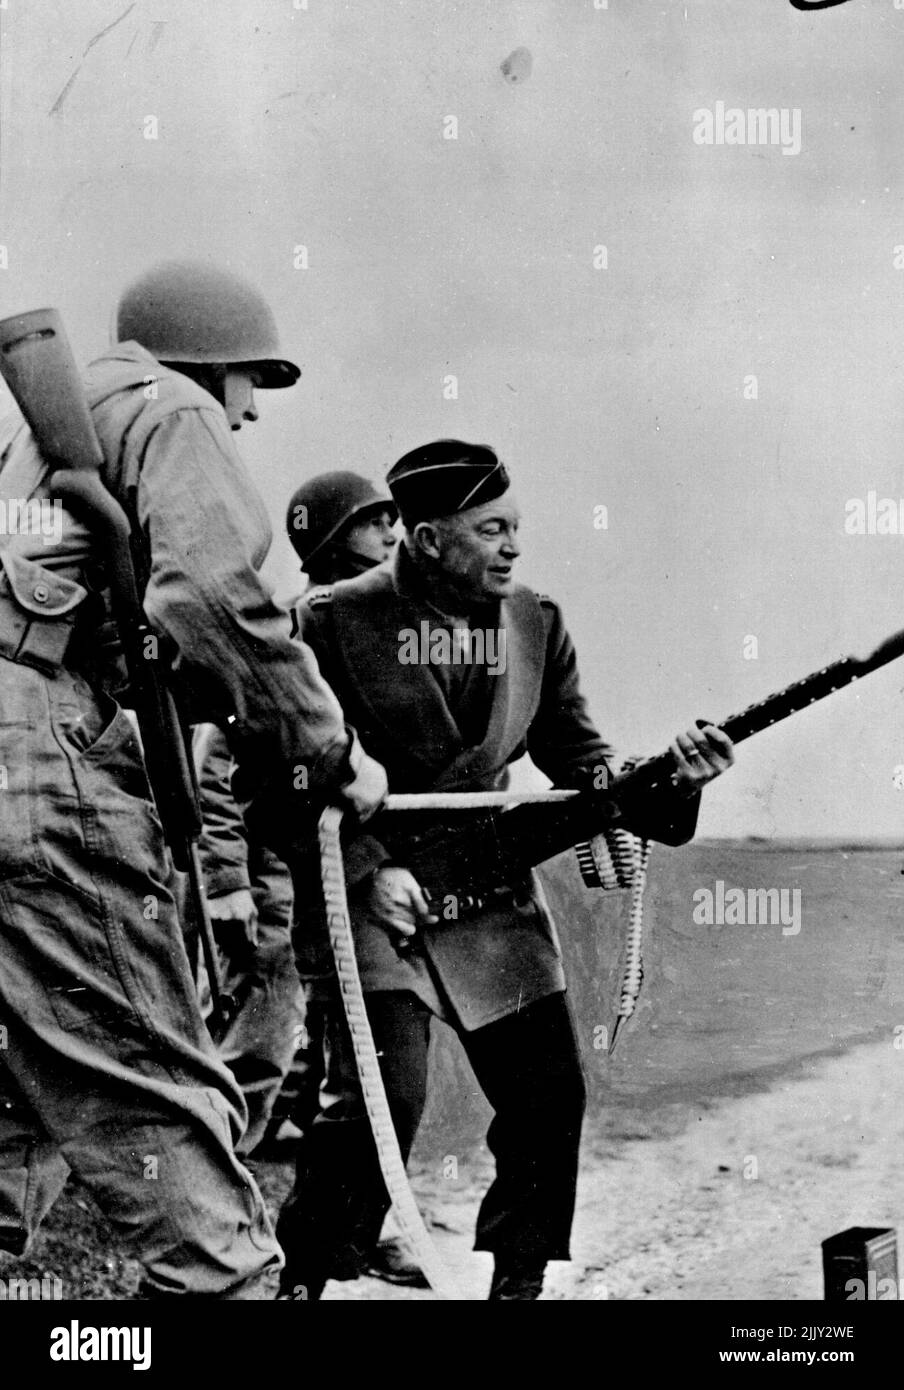 Eisenhower, comandante in capo della forza militare alleata in Gran Bretagna, spara una mitragliatrice non montata dal suo fianco mentre i fanti degli Stati Uniti osservano durante una recente ispezione delle unità dell'esercito alleato in Inghilterra. Marzo 20, 1944. Foto Stock